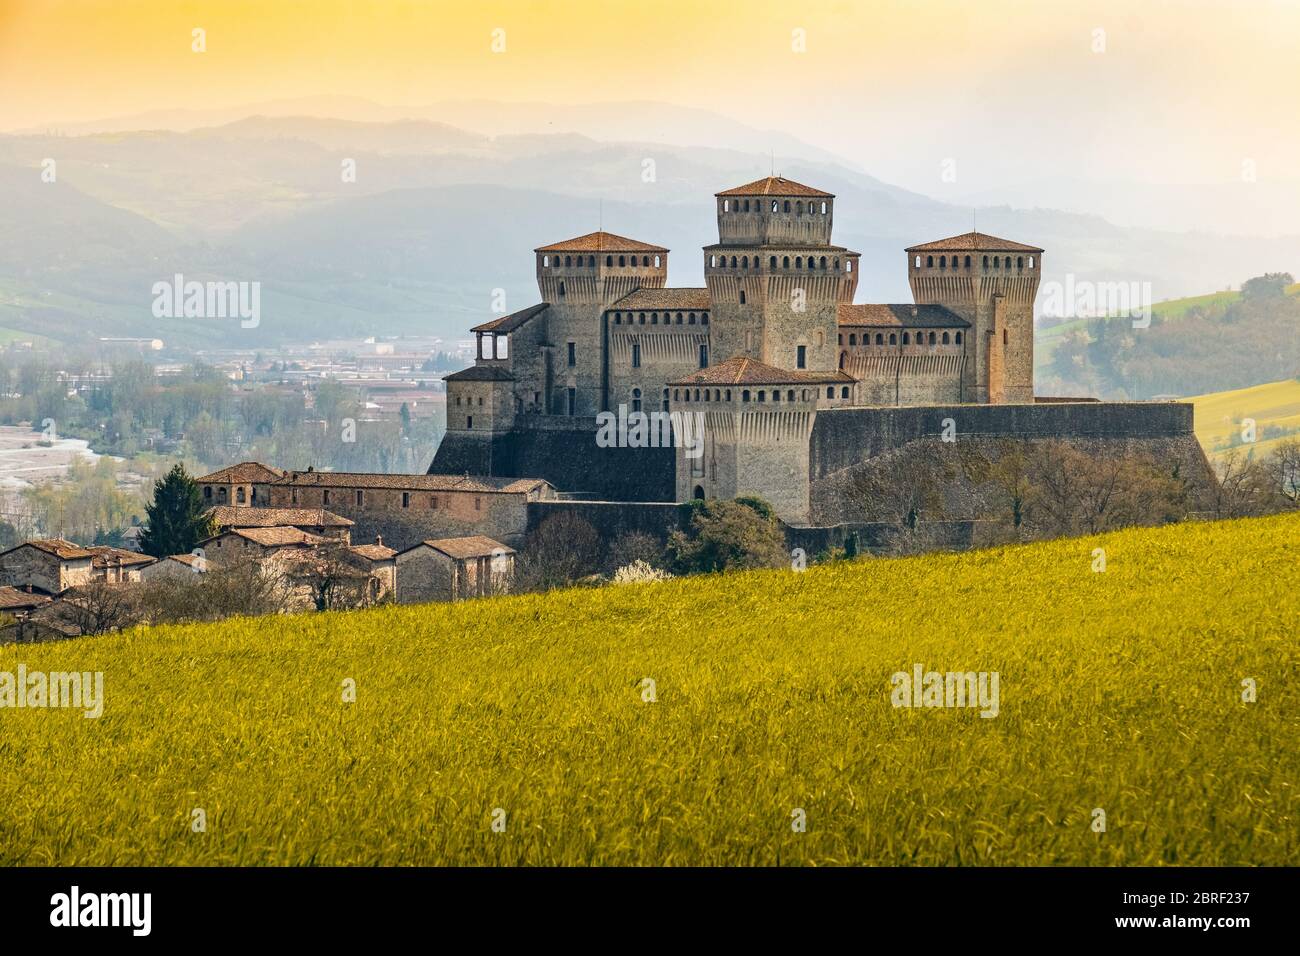 Wahrzeichen italiens, das Fantasy-Schloss Torrechiara bei Parma - Italien mit gelb-warmem Gras und Himmel Vintage-Look mit Kopierraum Stockfoto